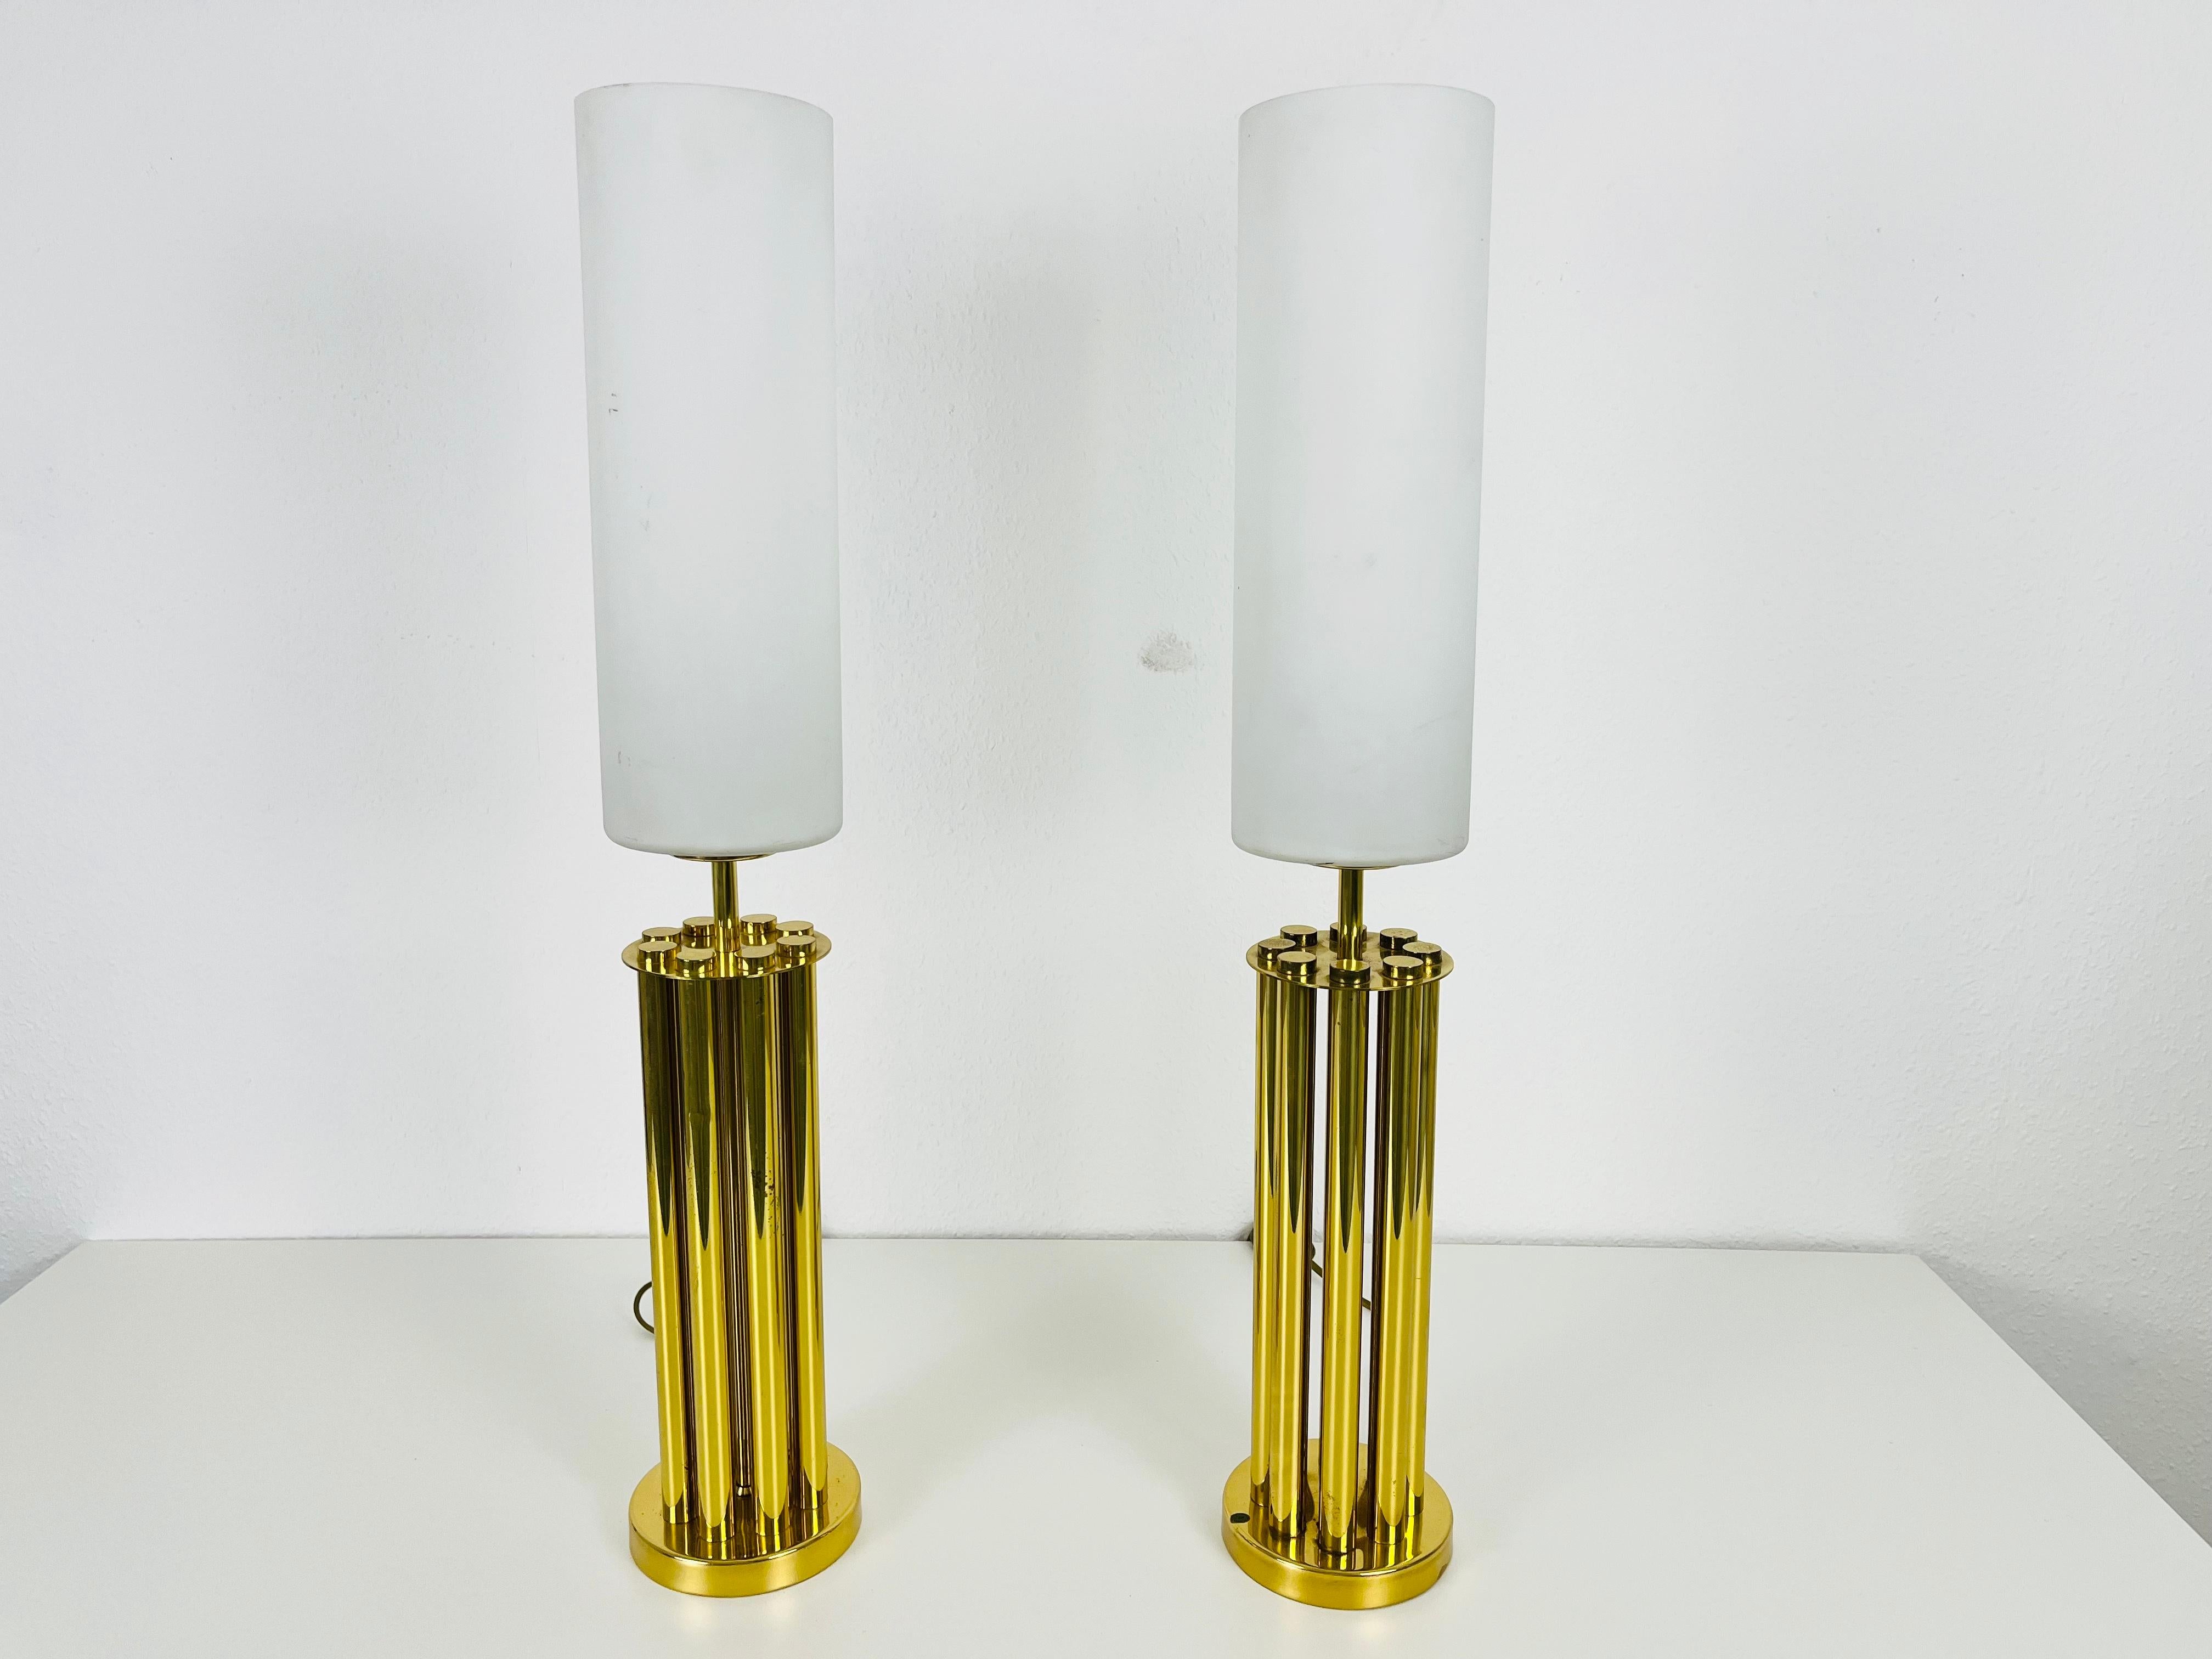 Une belle paire de lampes de table du milieu du siècle dernier, fabriquées en France dans les années 1960. Il est fascinant avec sa belle forme de pilier. Les lampes de table sont fabriquées en laiton poli et en verre opalin.

Mesures